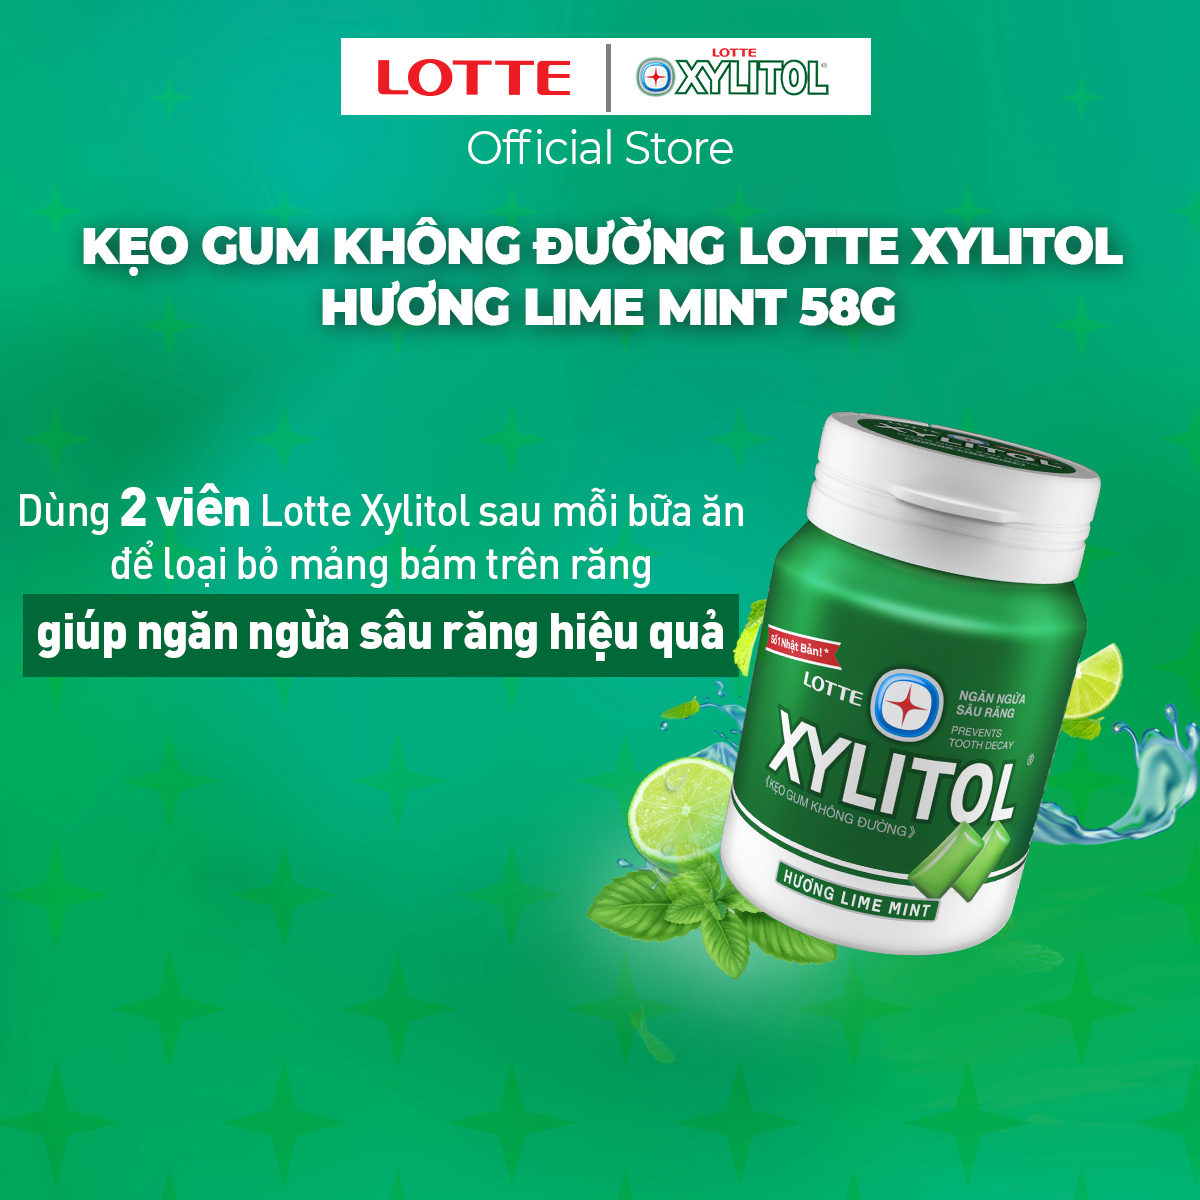 Combo 6 Kẹo Gum không đường Lotte Xylitol - Hương Lime Mint 55.1 g